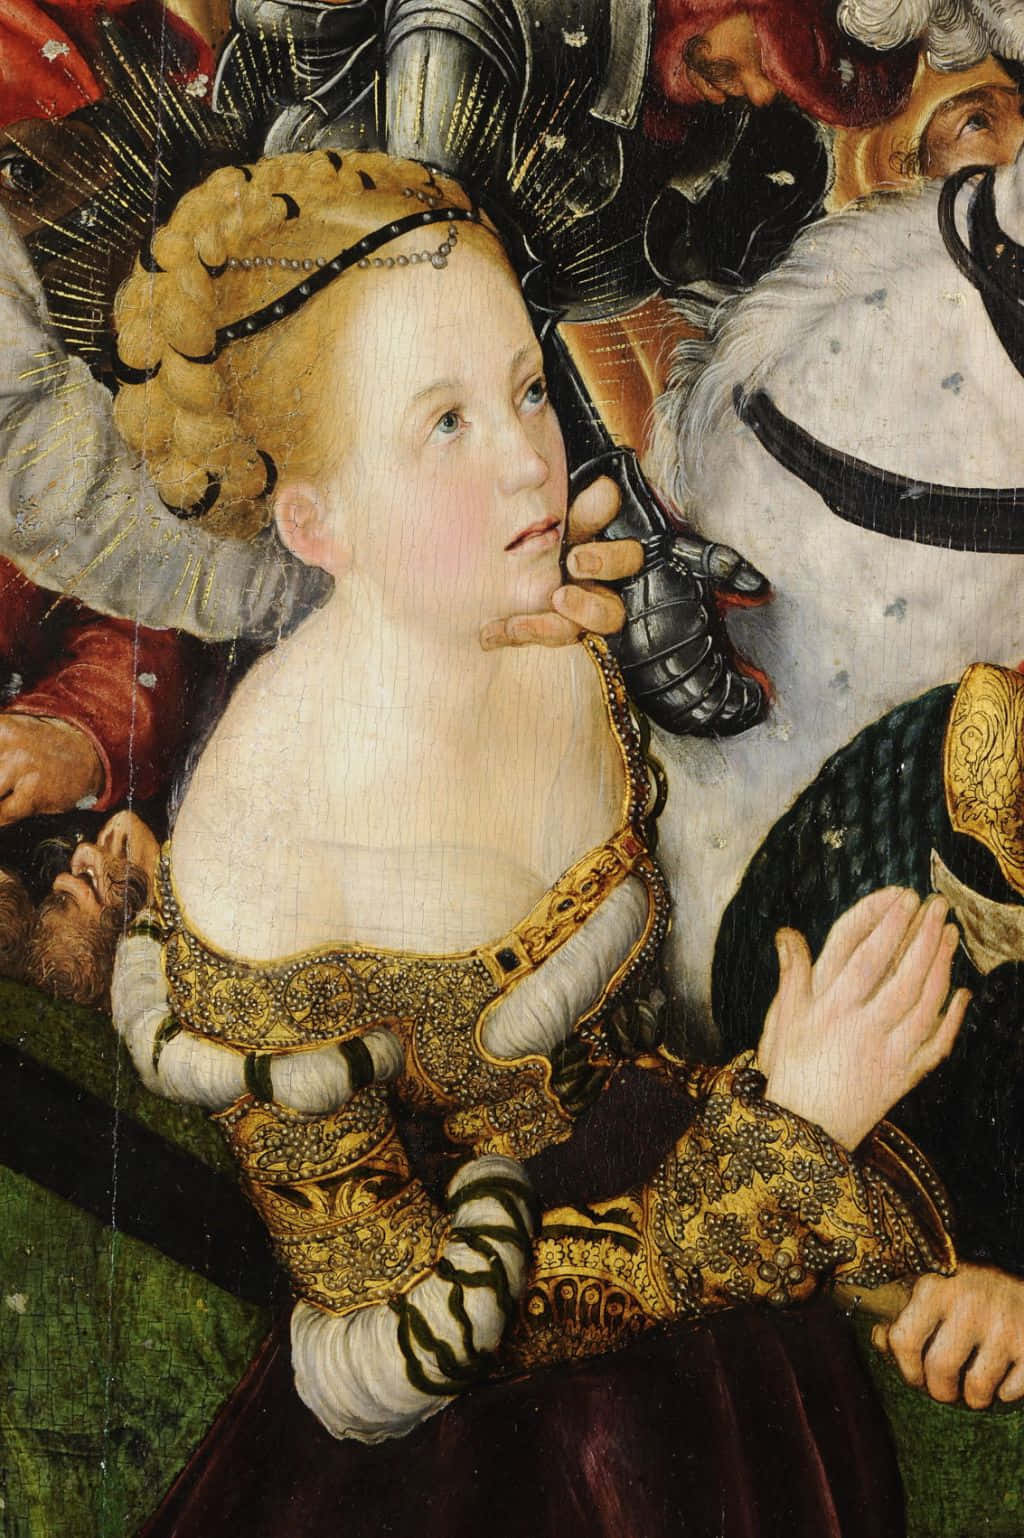 Illuminating the Art of the Renaissance